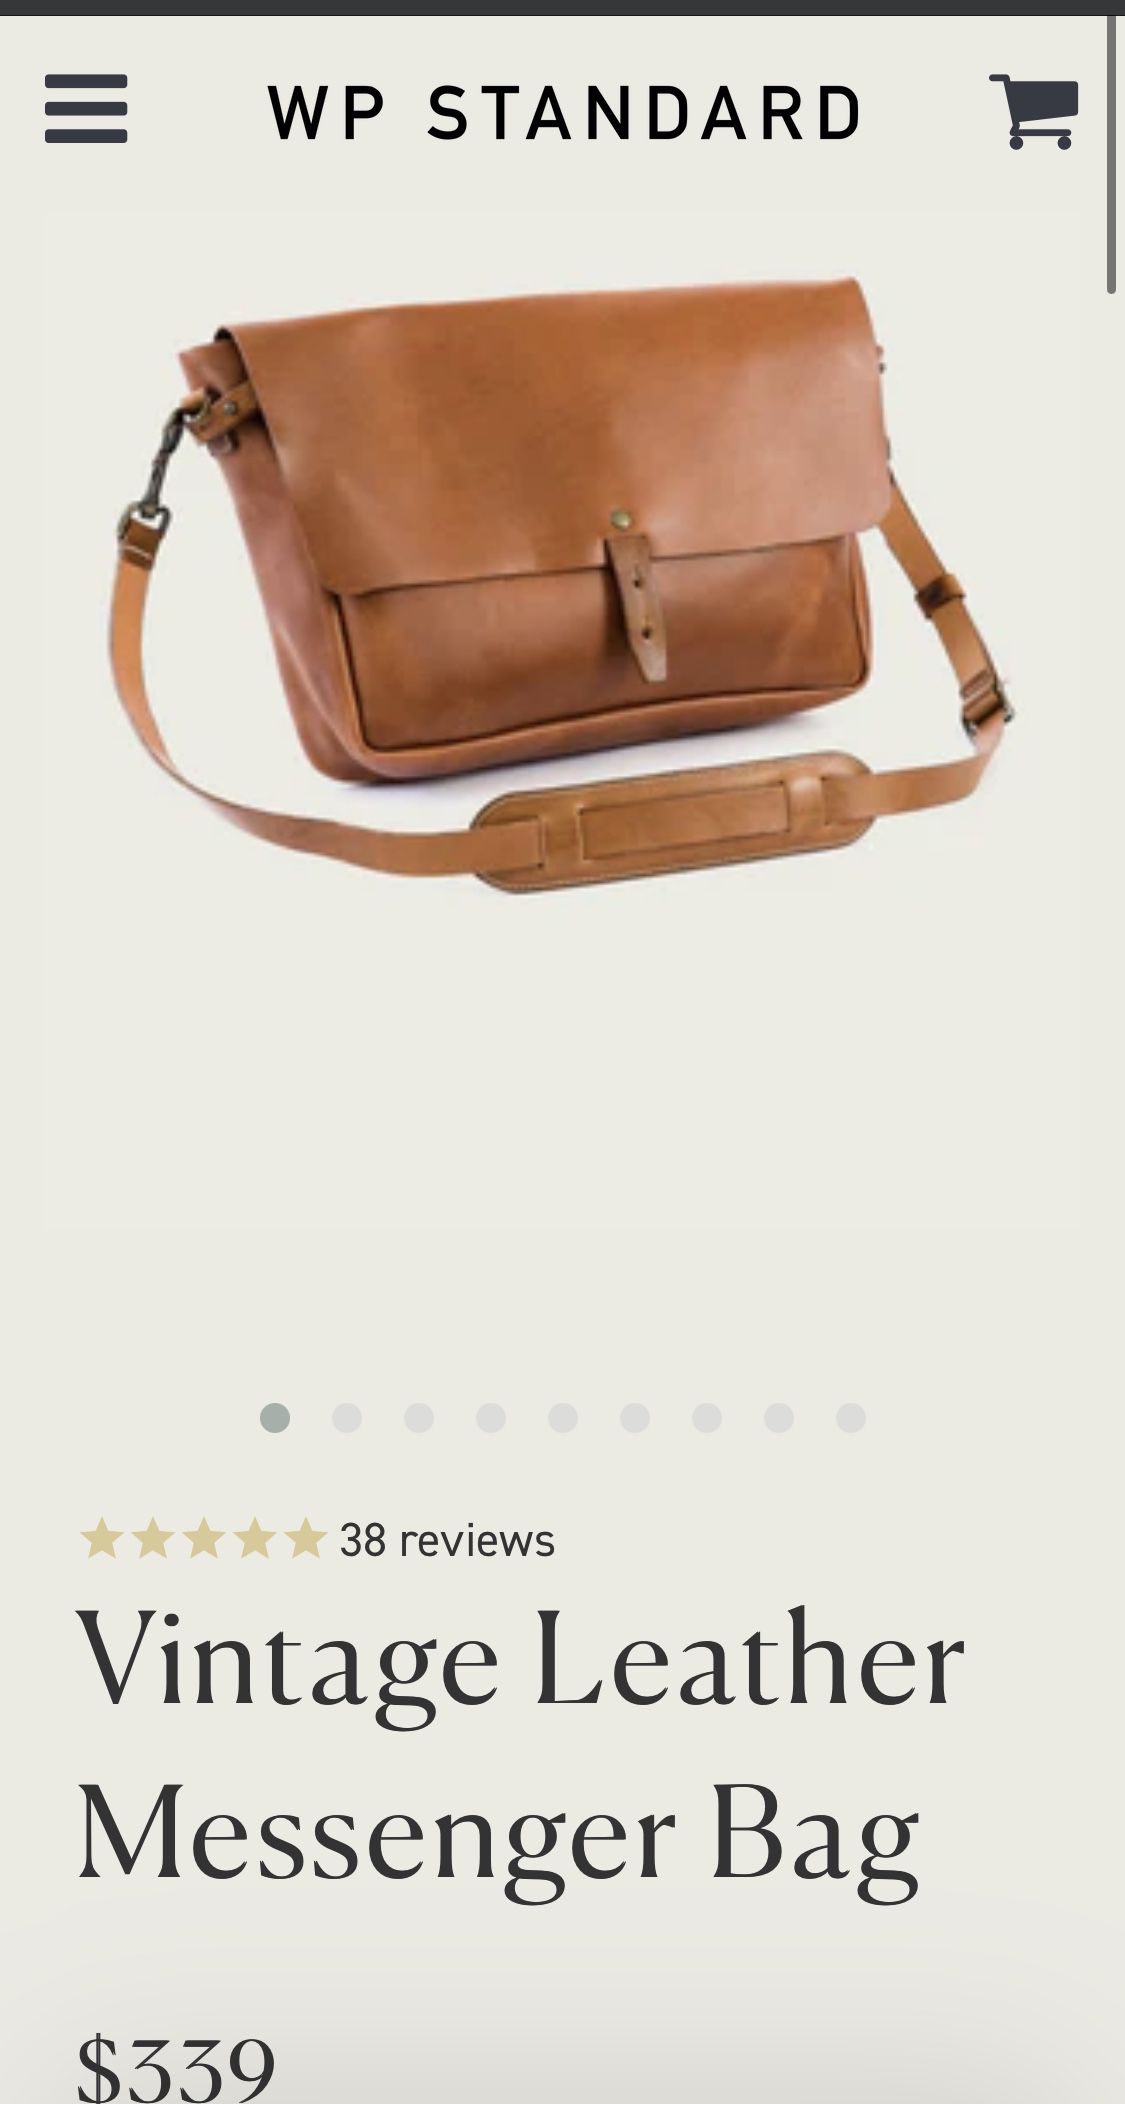 WP Vintage Leather Messenger bag